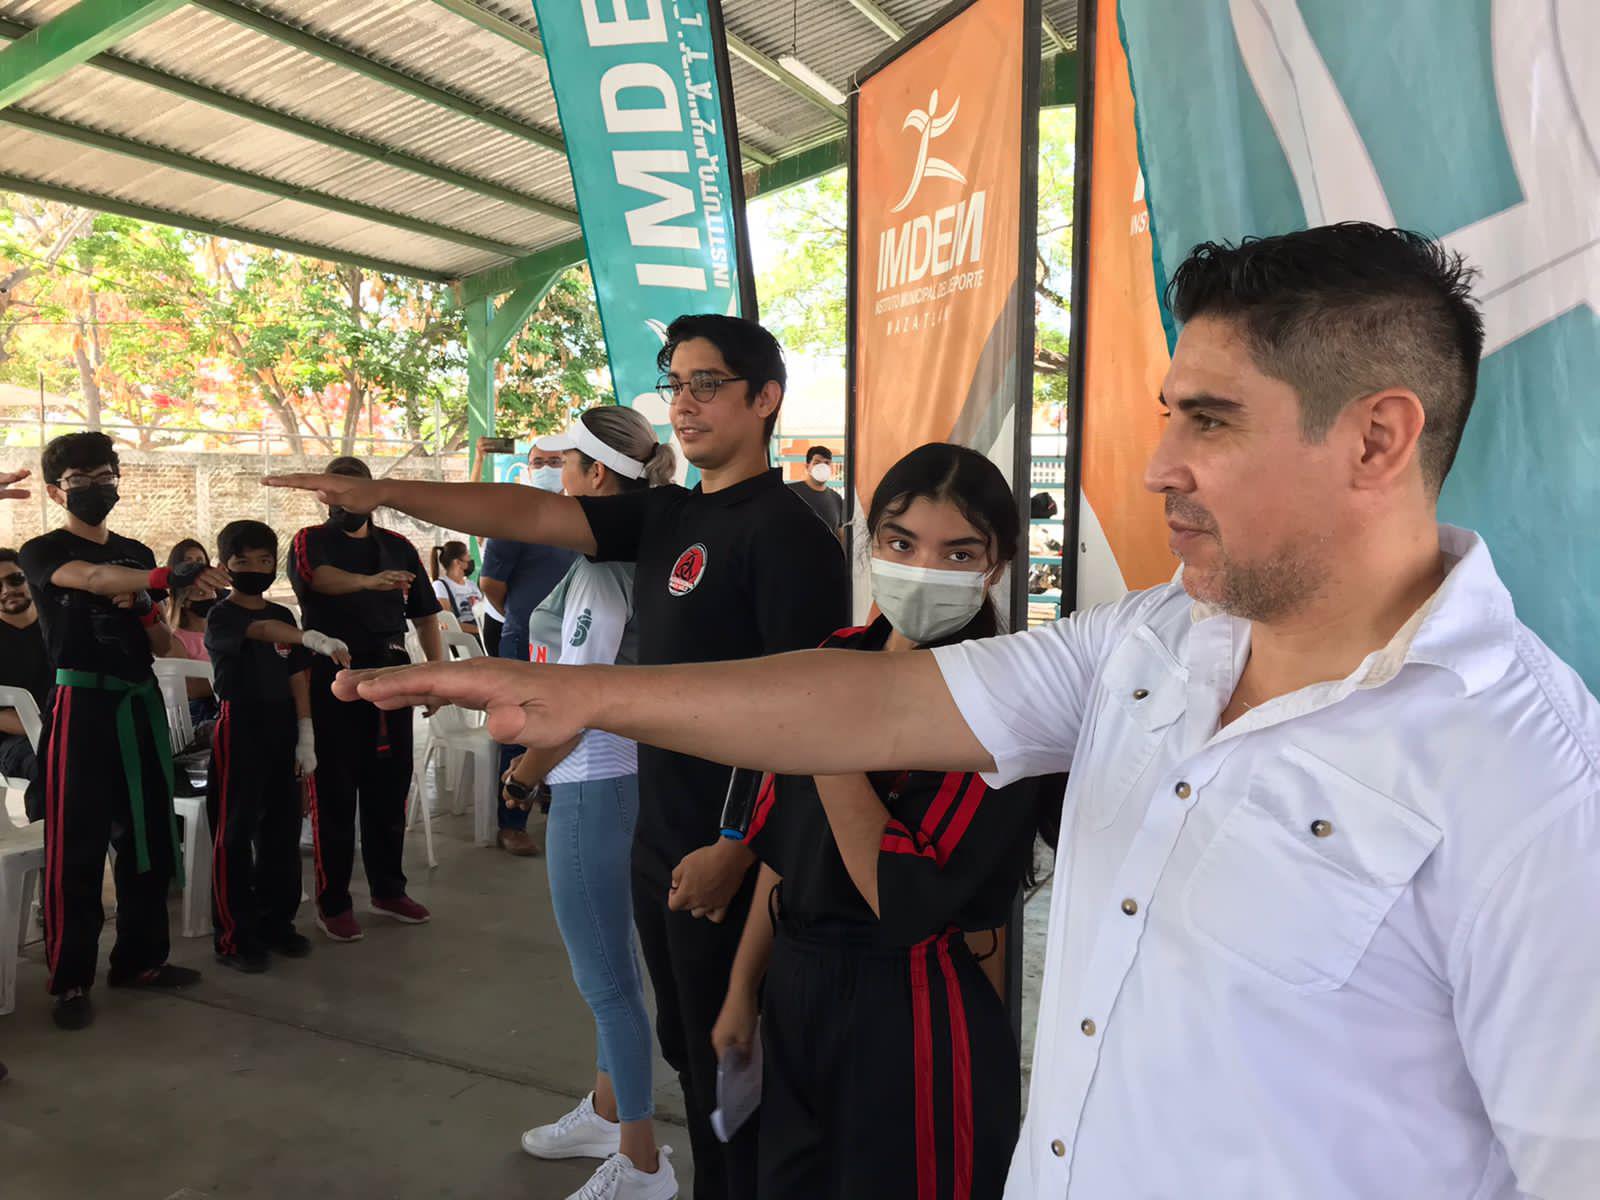 $!El kickboxing se abre espacio en Mazatlán con inauguración de Liga Black Belt